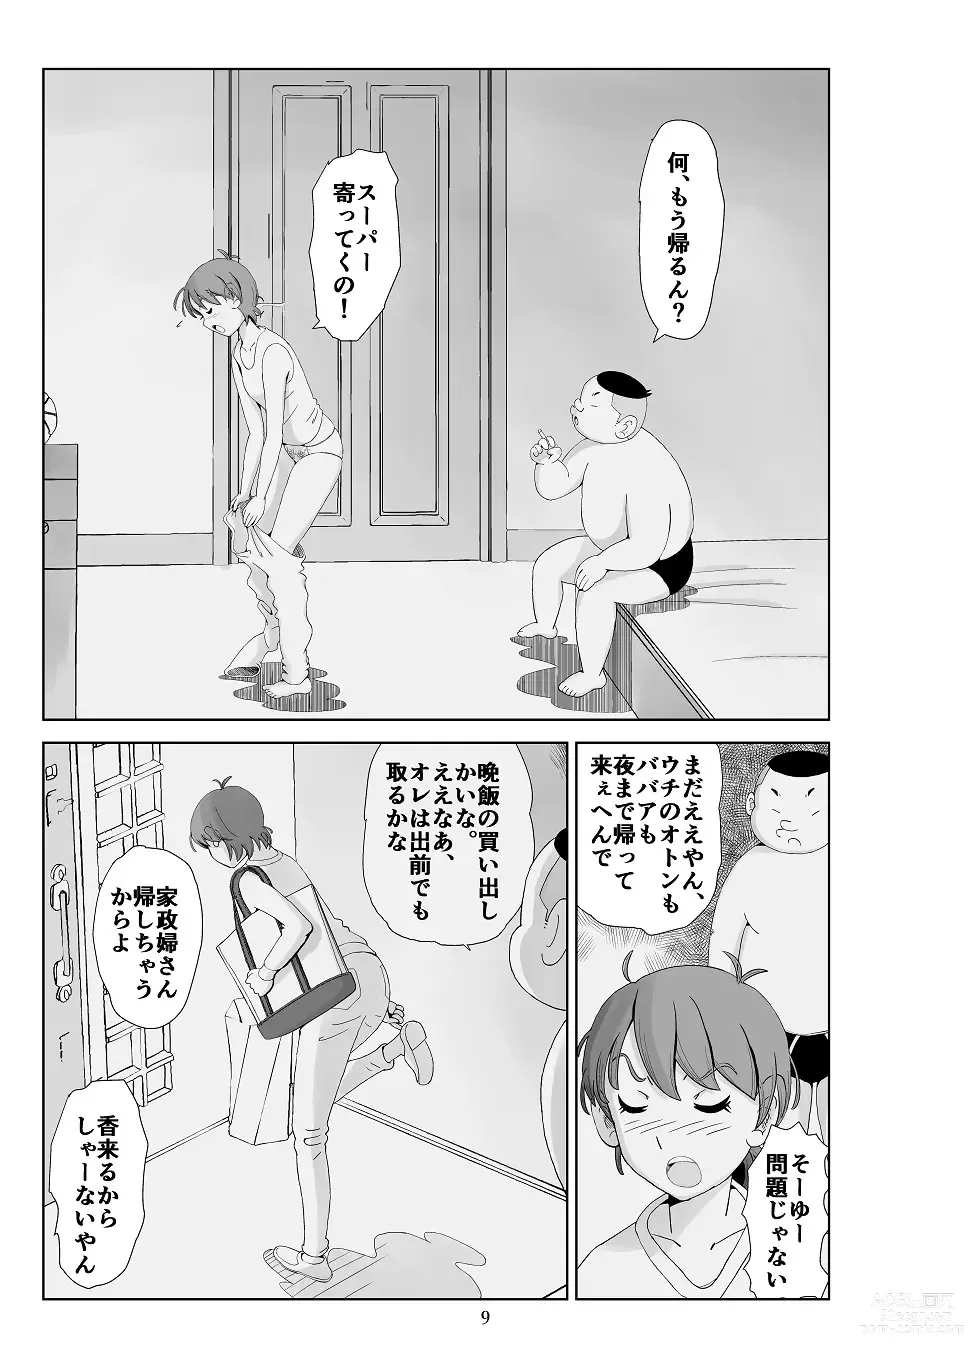 Page 10 of doujinshi Futoshi 3